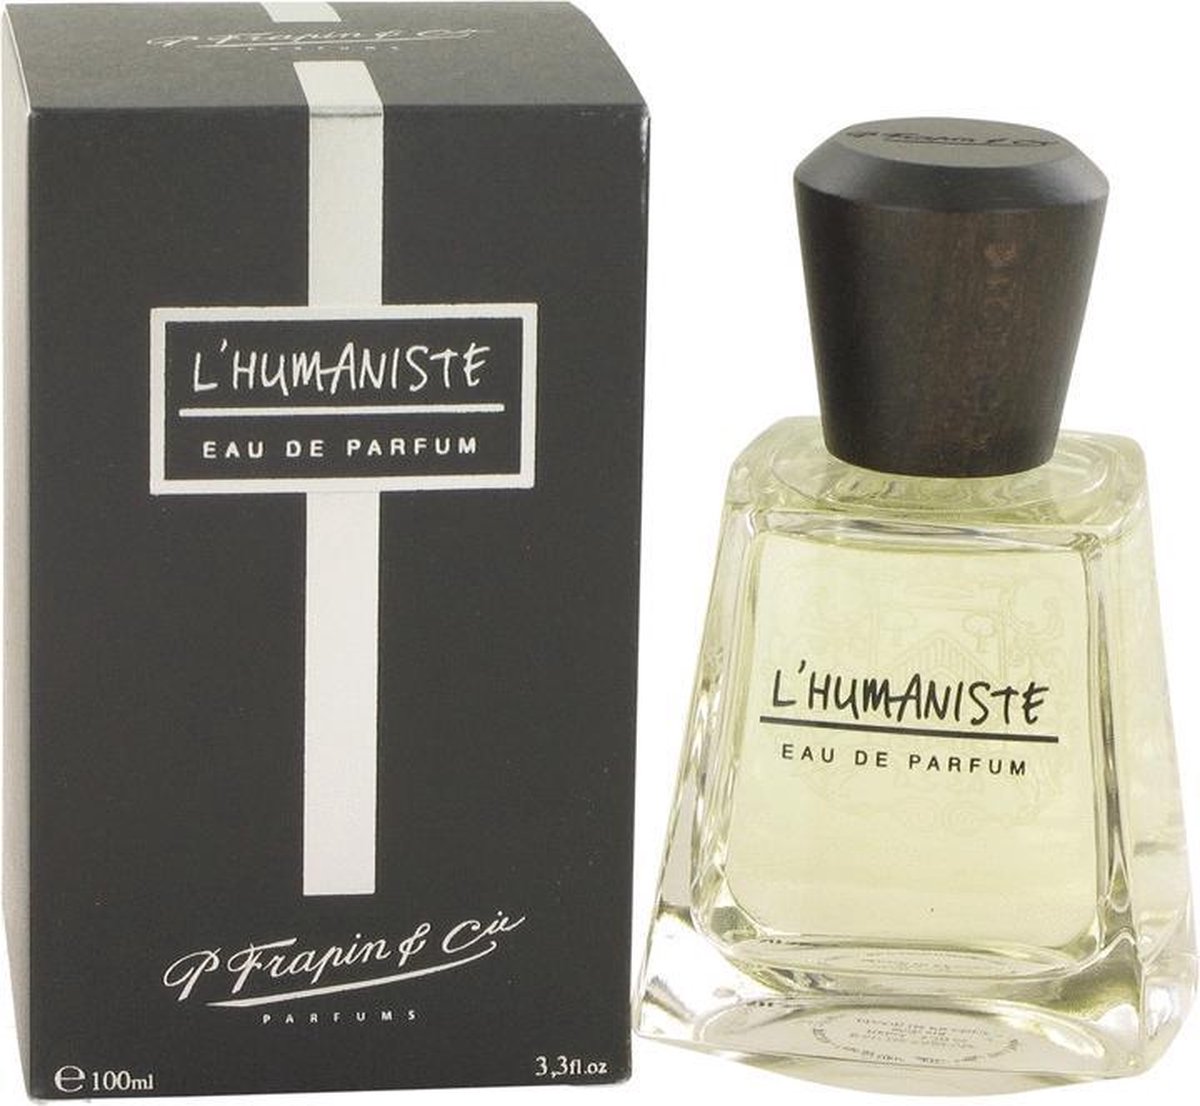 L'humaniste by Frapin 100 ml - Eau De Parfum Spray